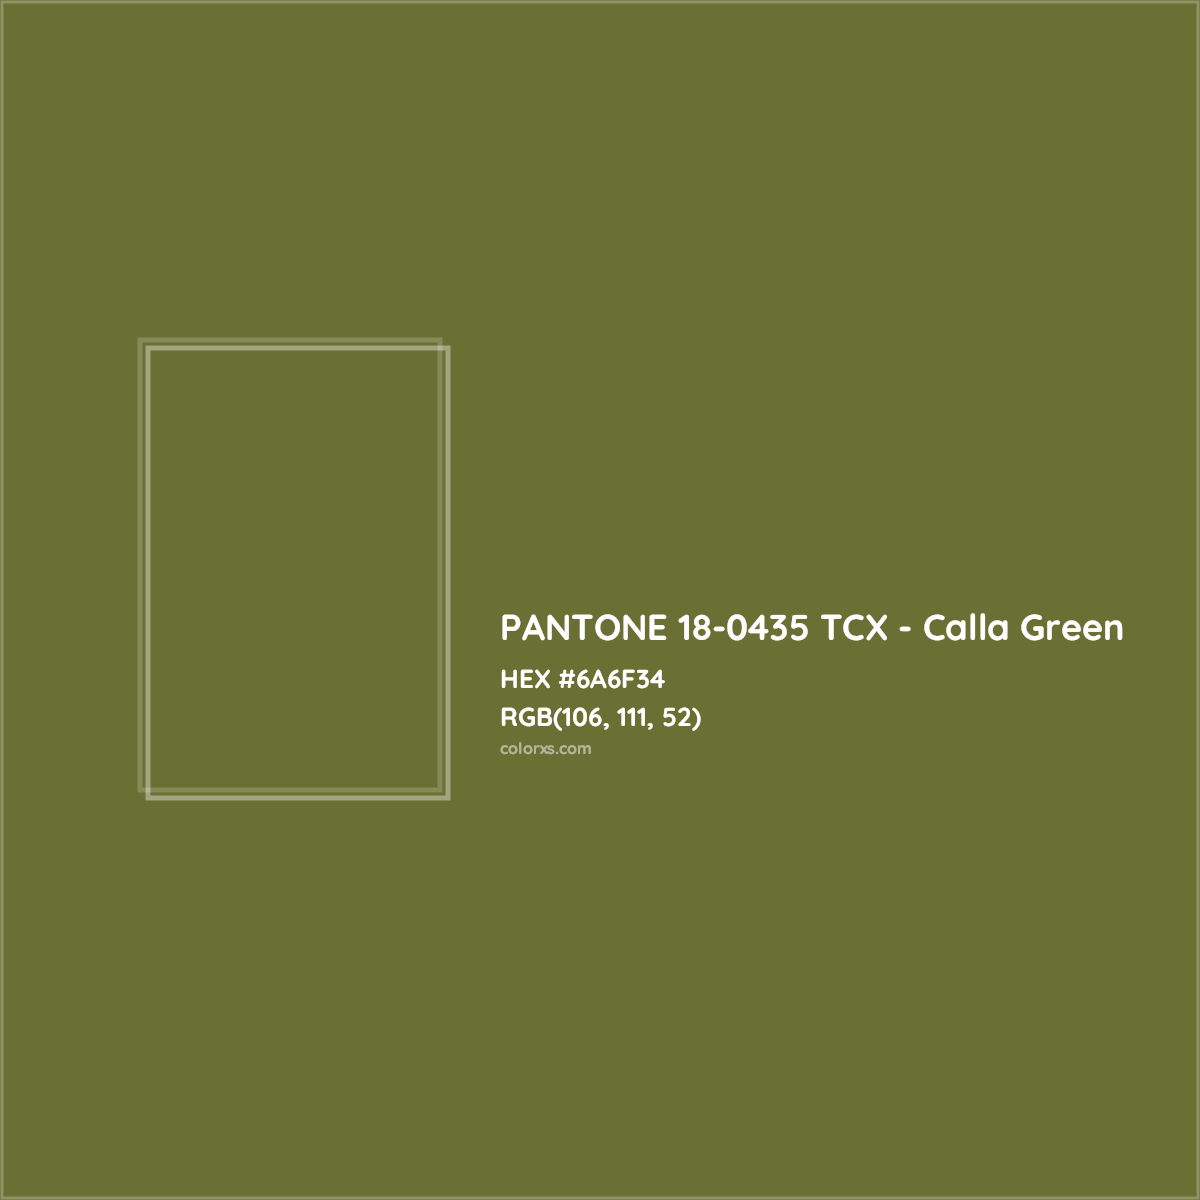 HEX #6A6F34 PANTONE 18-0435 TCX - Calla Green CMS Pantone TCX - Color Code